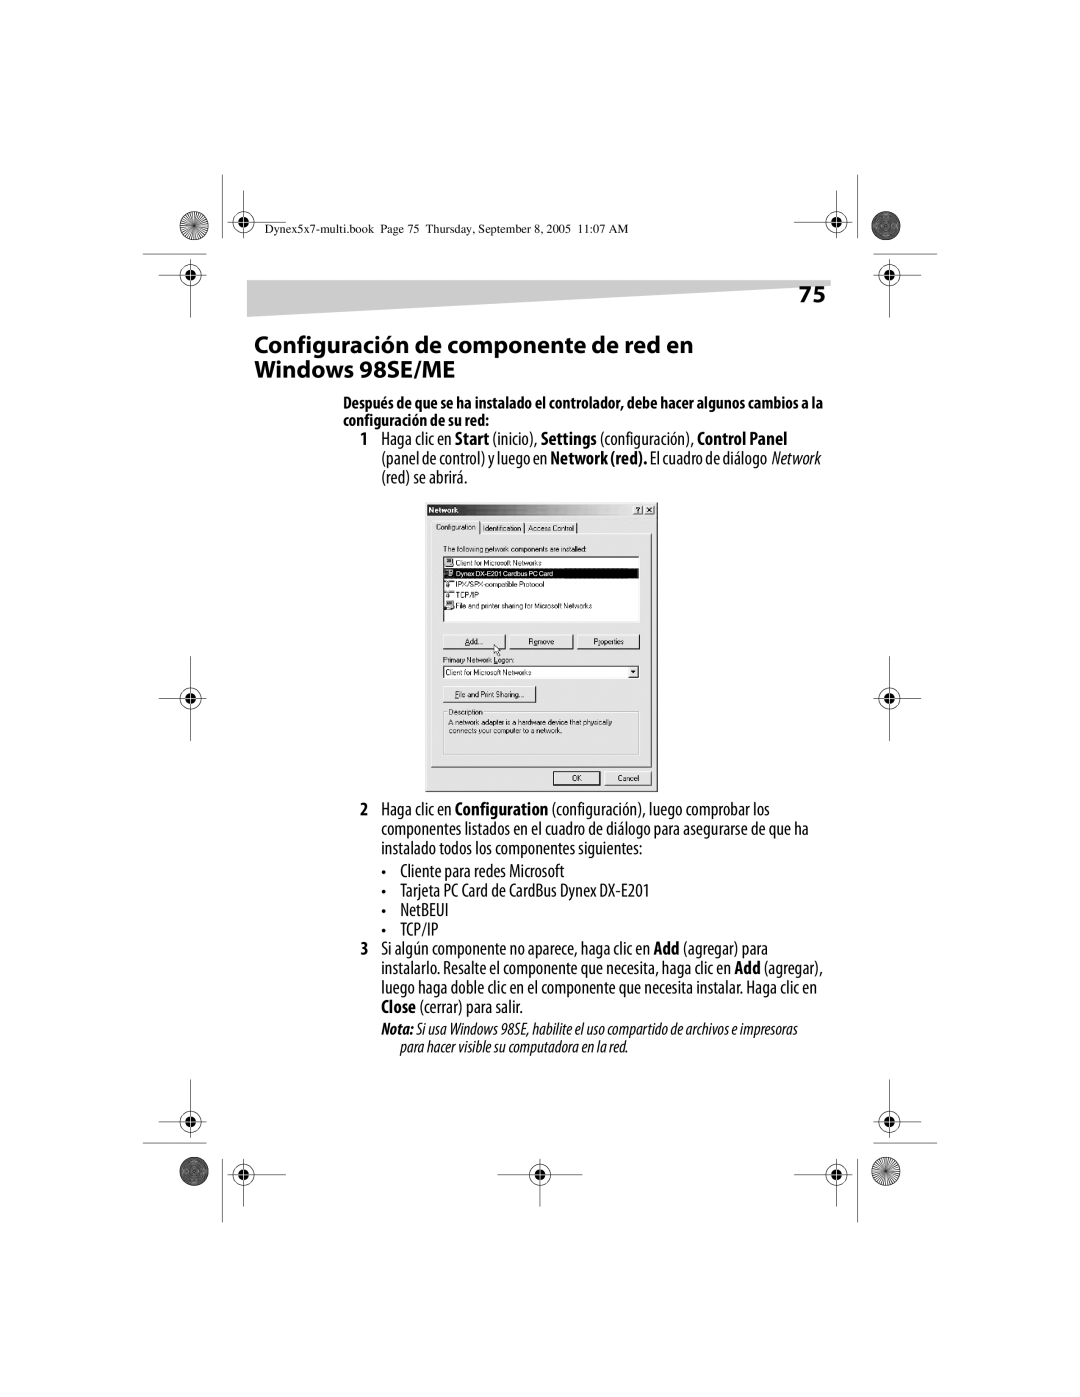 Dynex DX-E201 manual Configuración de componente de red en Windows 98SE/ME, NetBEUI TCP/IP 